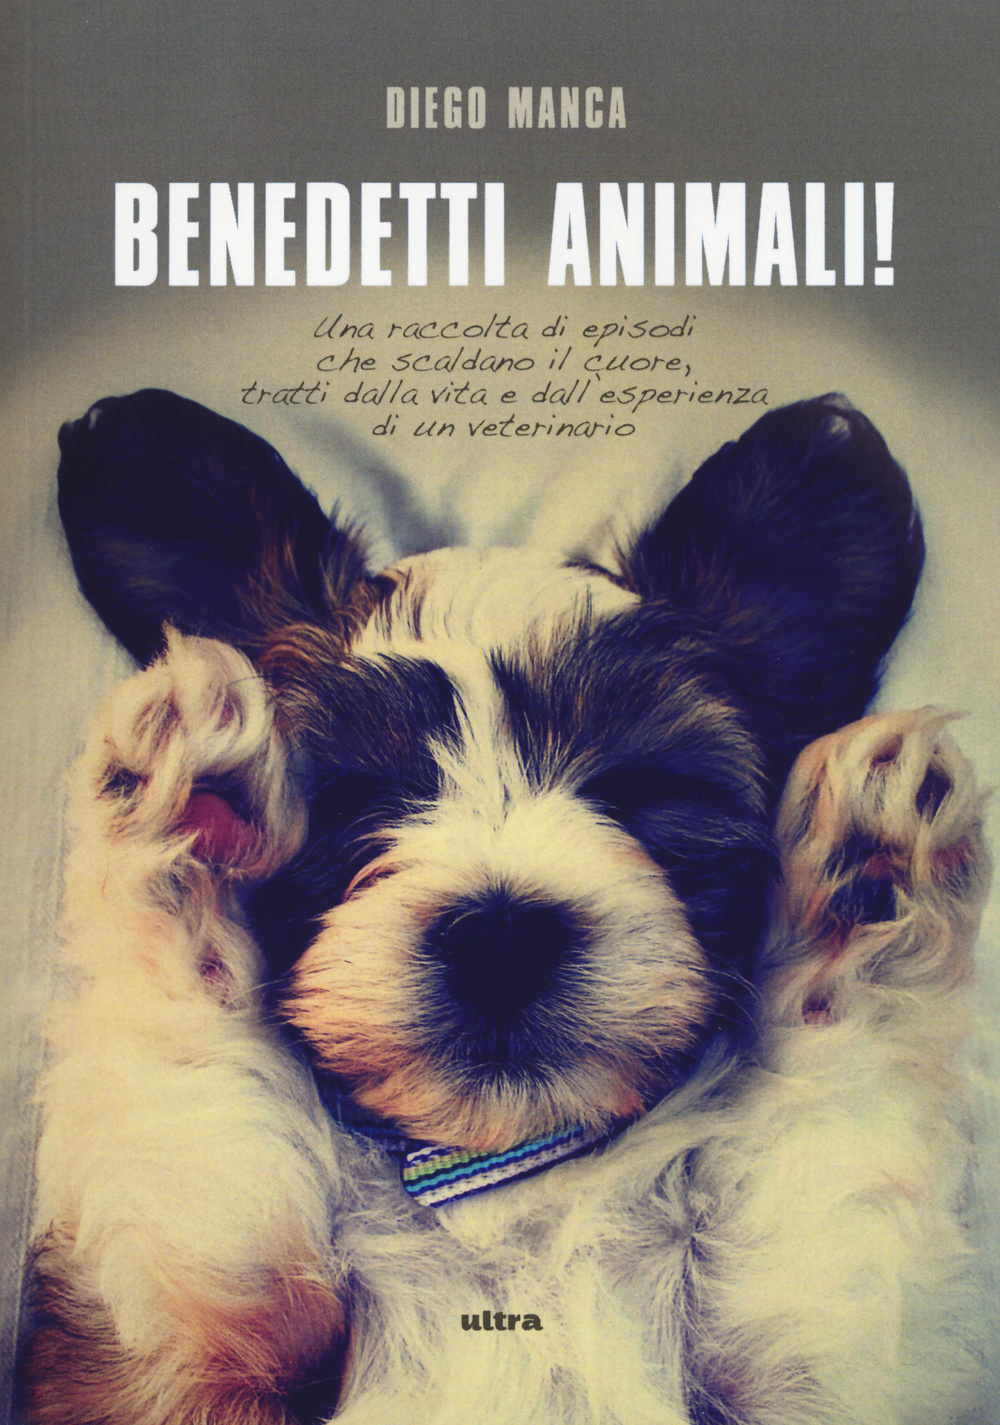 Benedetti animali! Una raccolta di episodi che scaldano il cuore, tratti dalla vita e dall'esperienza di un veterinario